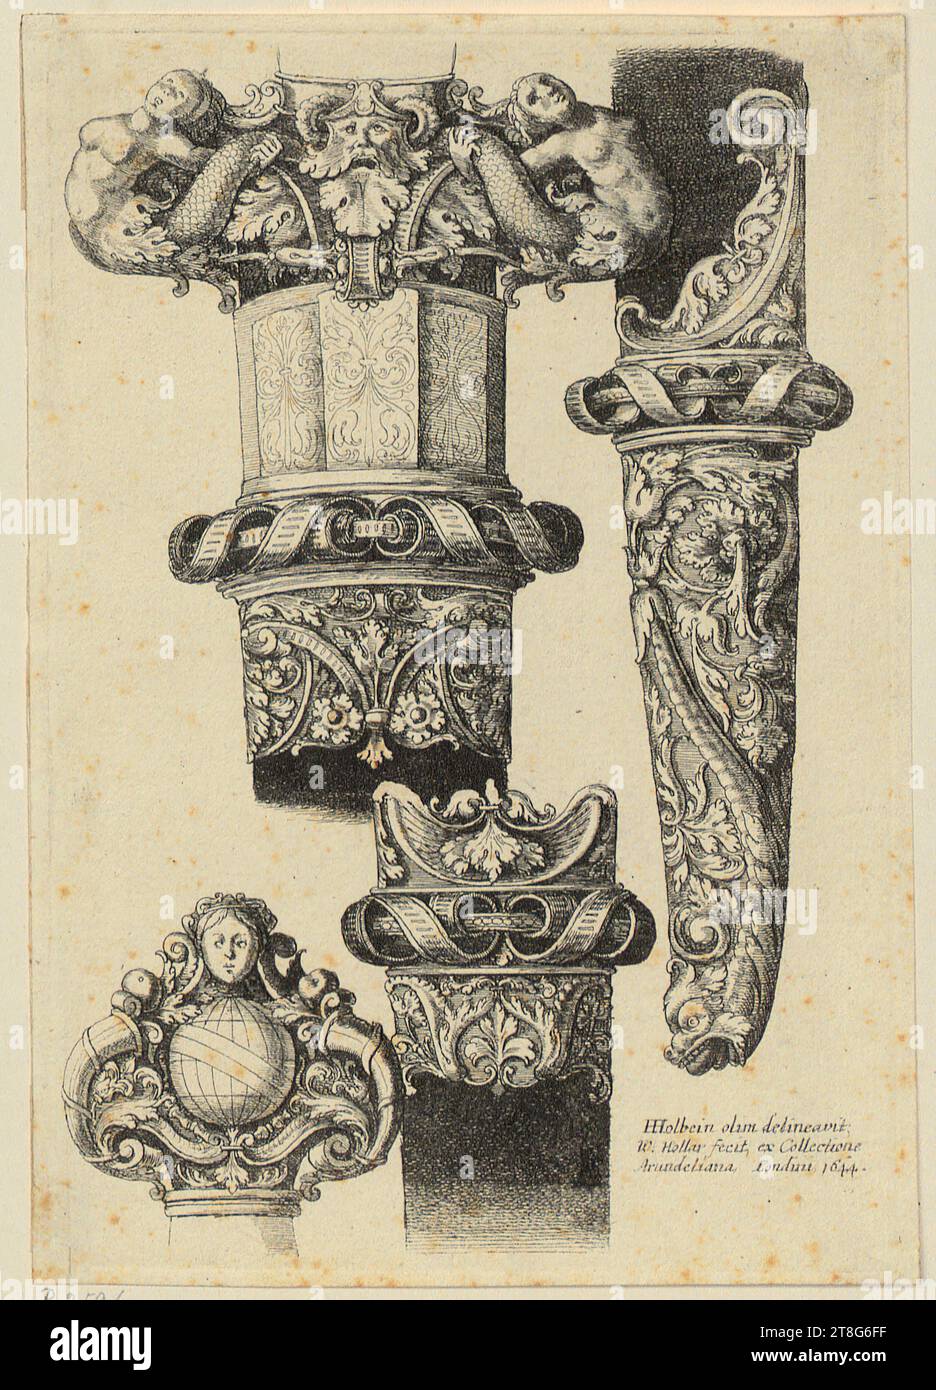 Agostino Carracci (1557 - 1602)Francesco Vanni (1567 UM - 1610), d'après Matteo Florimi (1540 UM - UM 1613), éditeur, Saint Jérôme, Wenceslas Hollar (1607 - 1677)Hans Holbein (le Jeune) (1497 - 1543), après, poignards et poignards avec ornements de feuillage, origine du support d'impression : 1644, gravure, taille de la feuille : 15. 9 x 11,0 cm, en bas à droite inscrit, signé et daté 'HHolbein olim definavit, W : Hollar fecit, ex Collec Banque D'Images